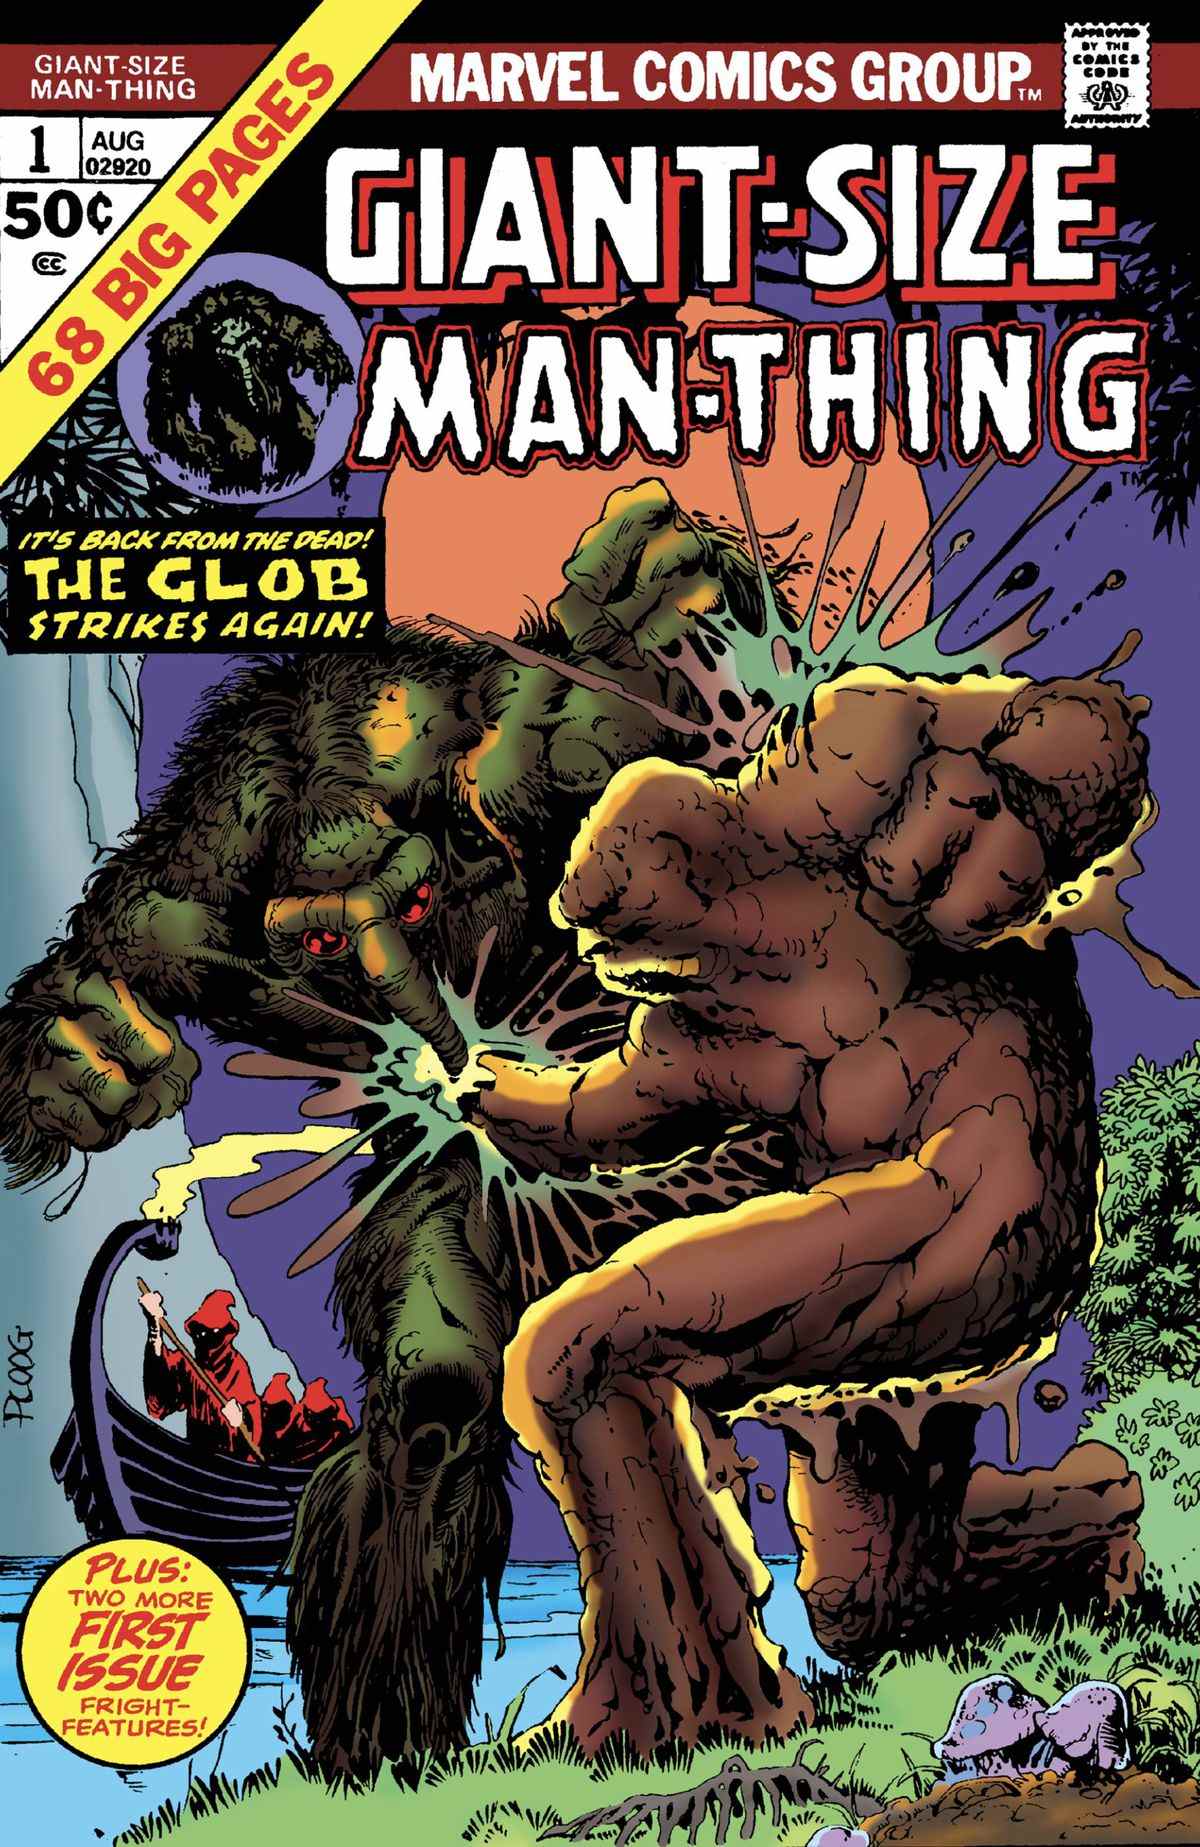 Man-Thing et le Glob s'affrontent dans un marais sur la couverture du numéro de 68 pages, Giant-Size Man-Thing # 1 (1974).